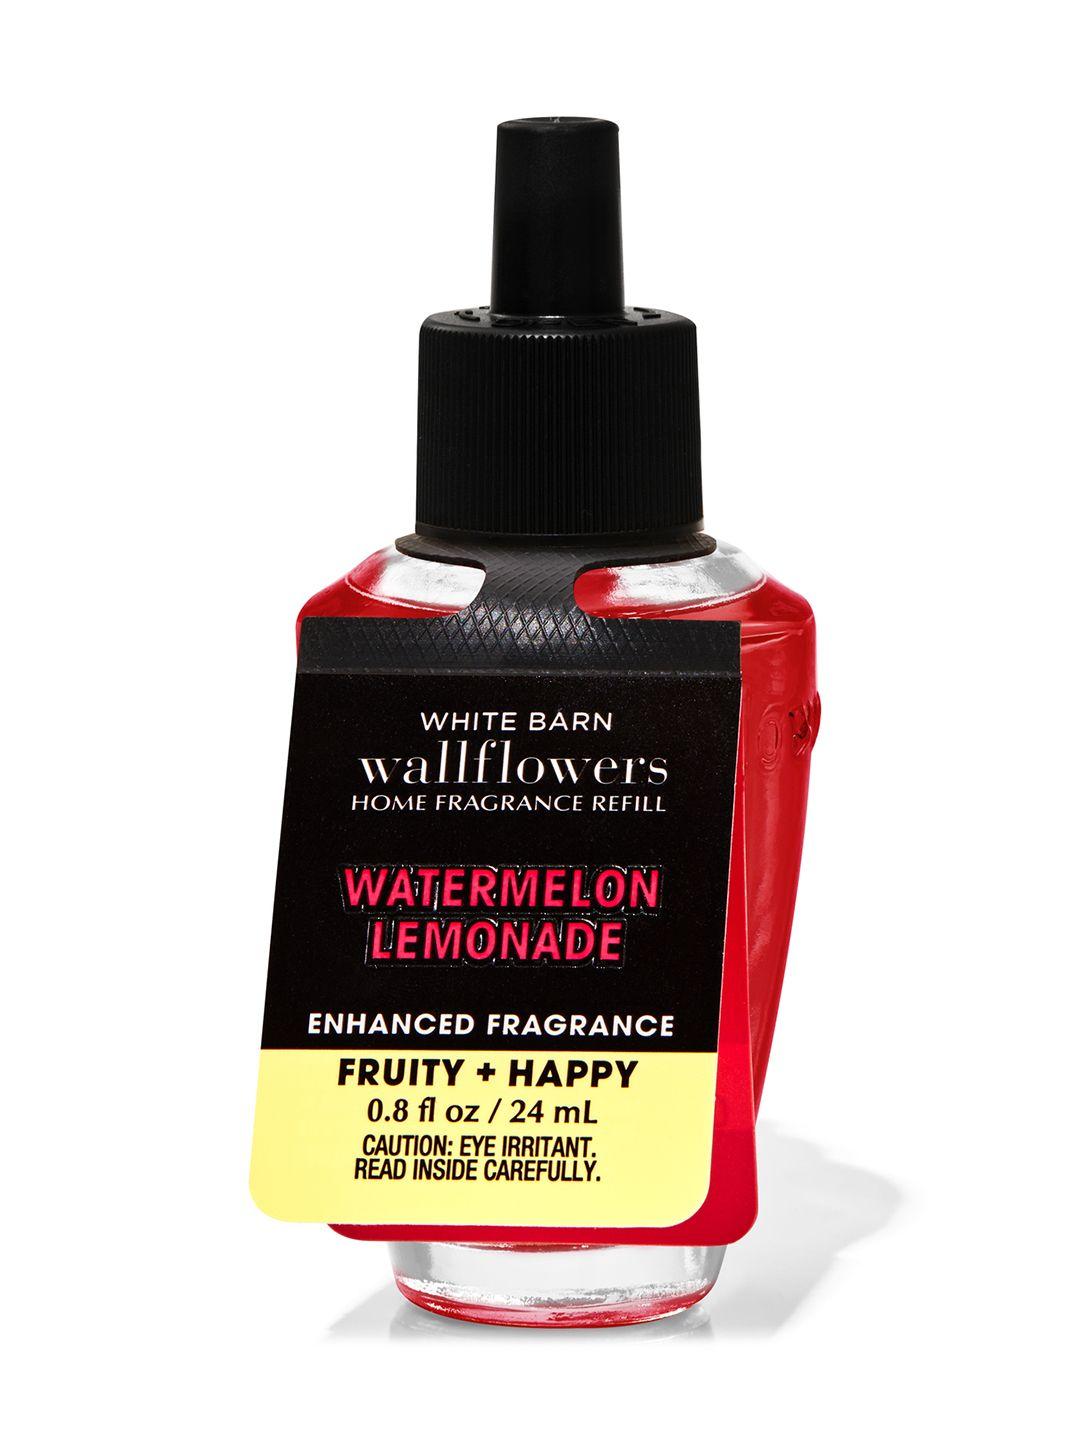 bath & body works watermelon lemonade wallflowers fragrance refill - 24 ml